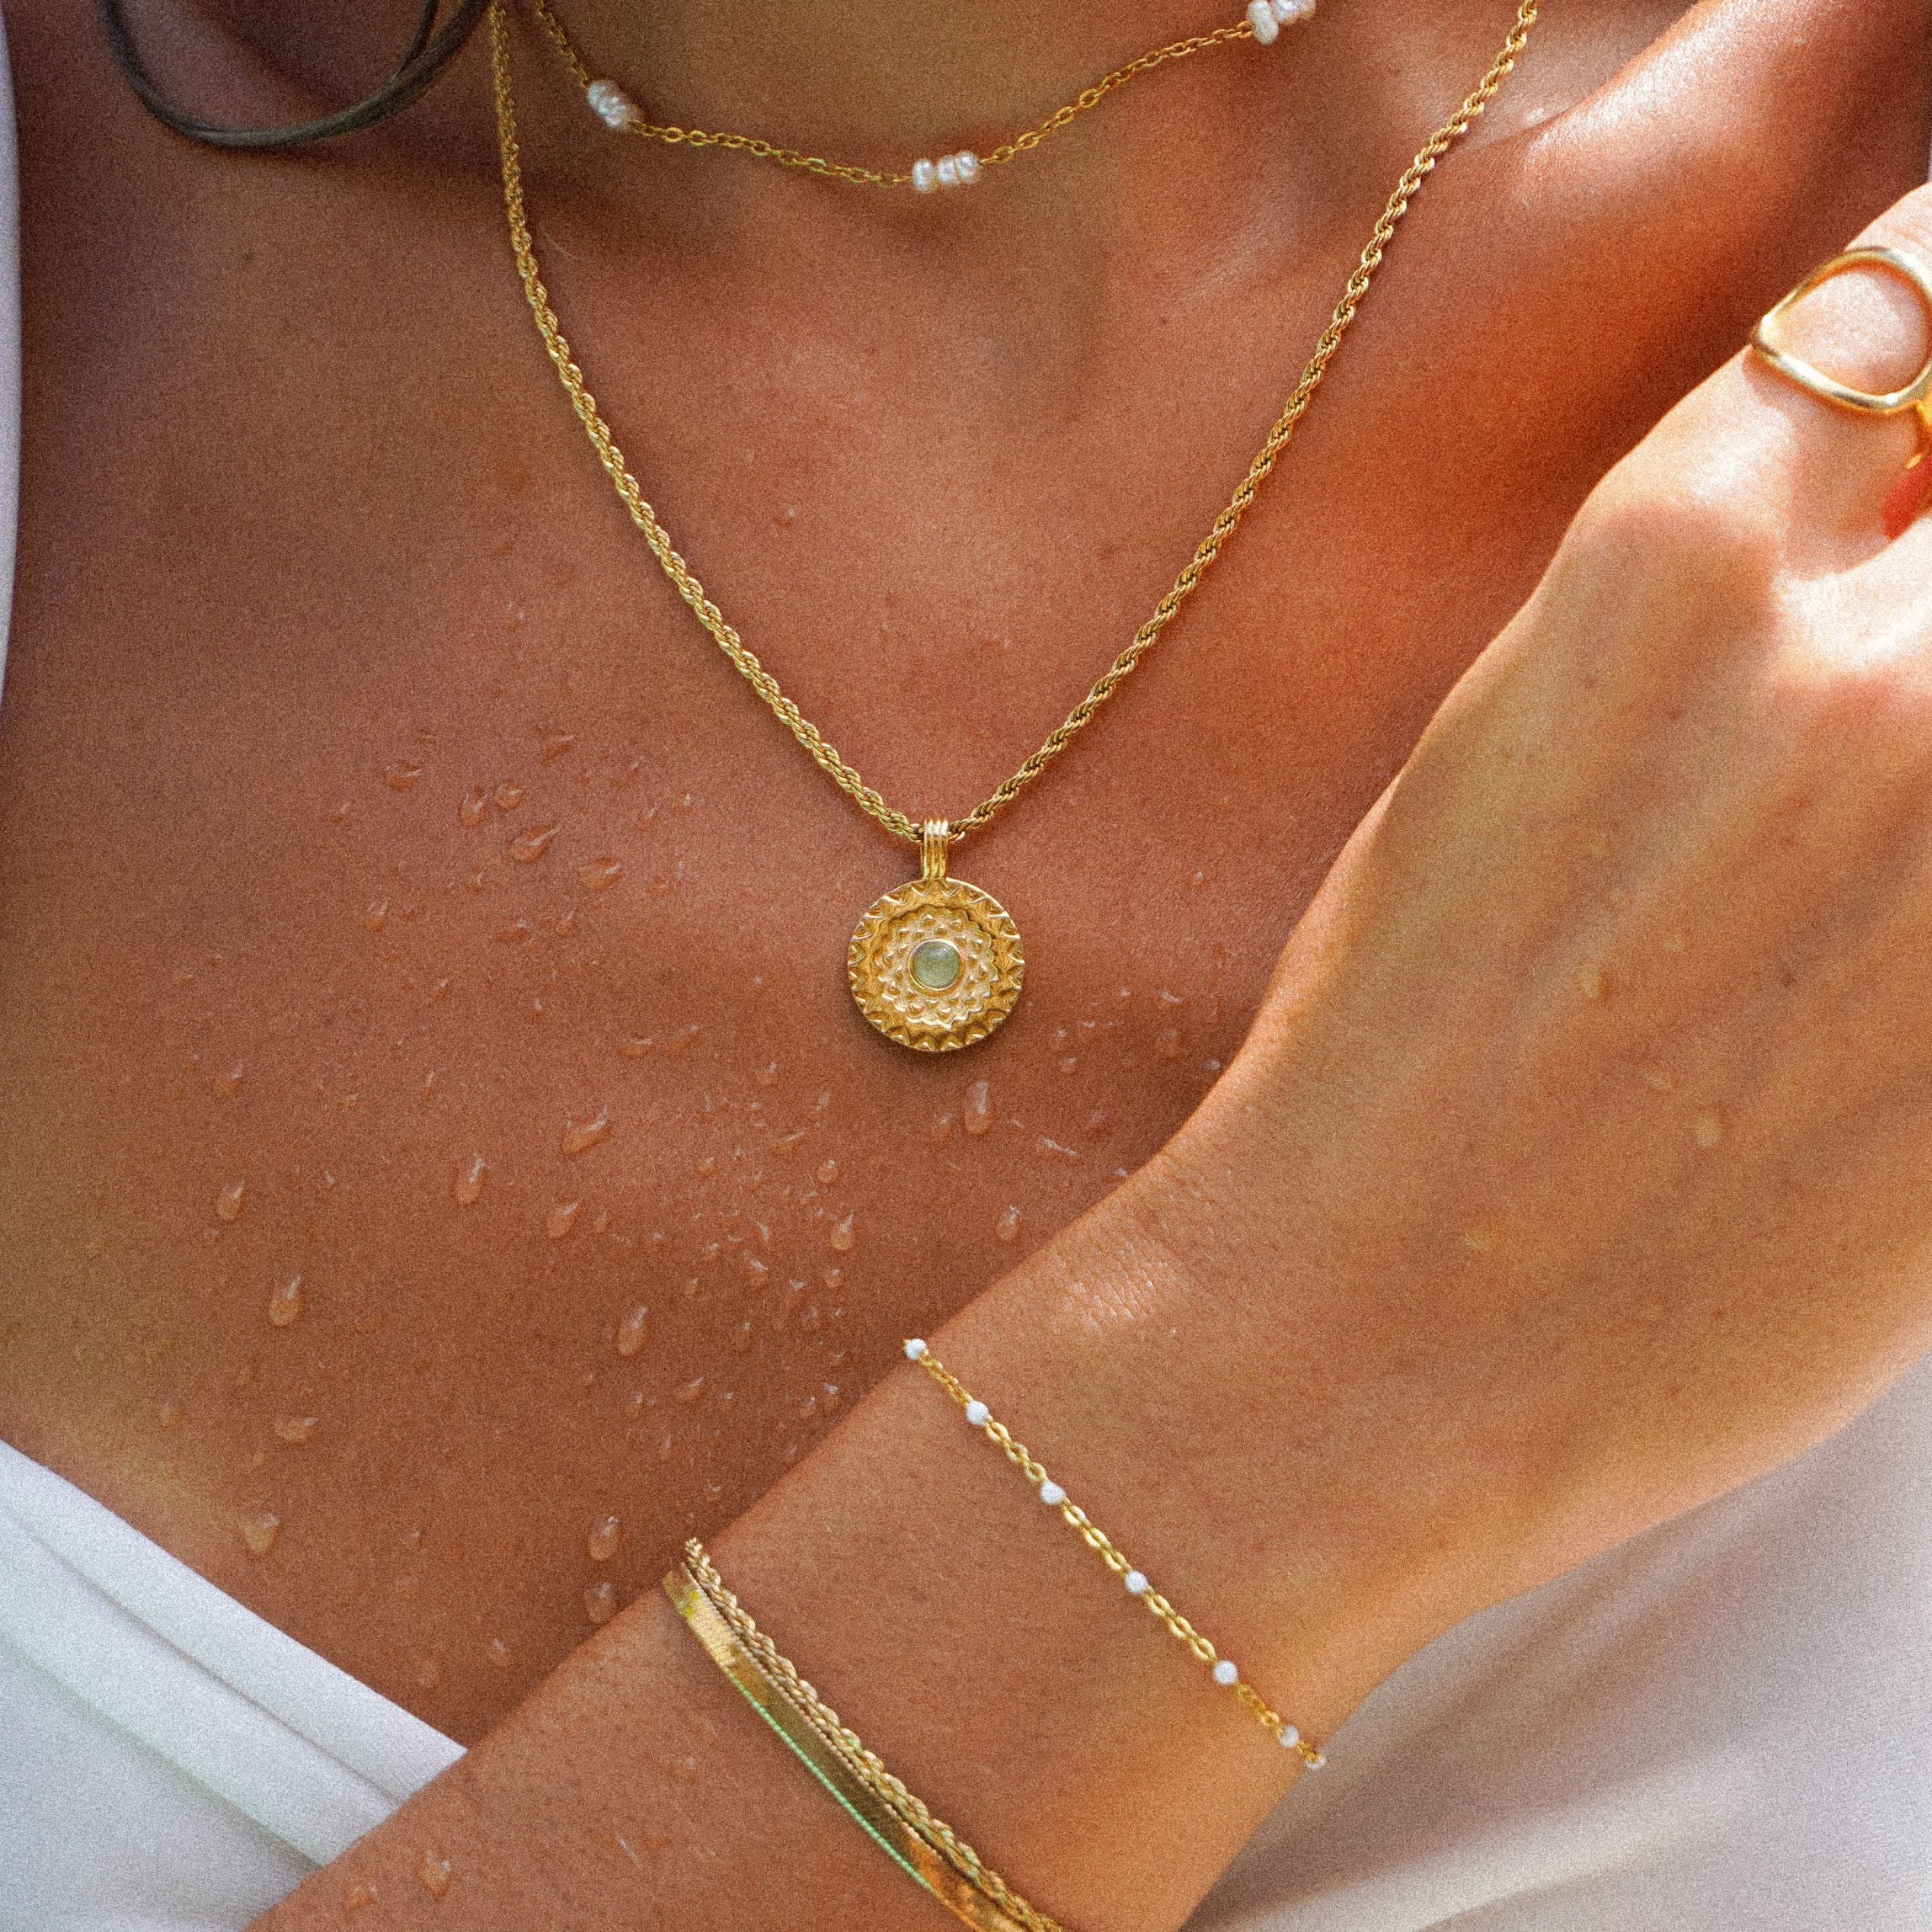 Inca sun necklace